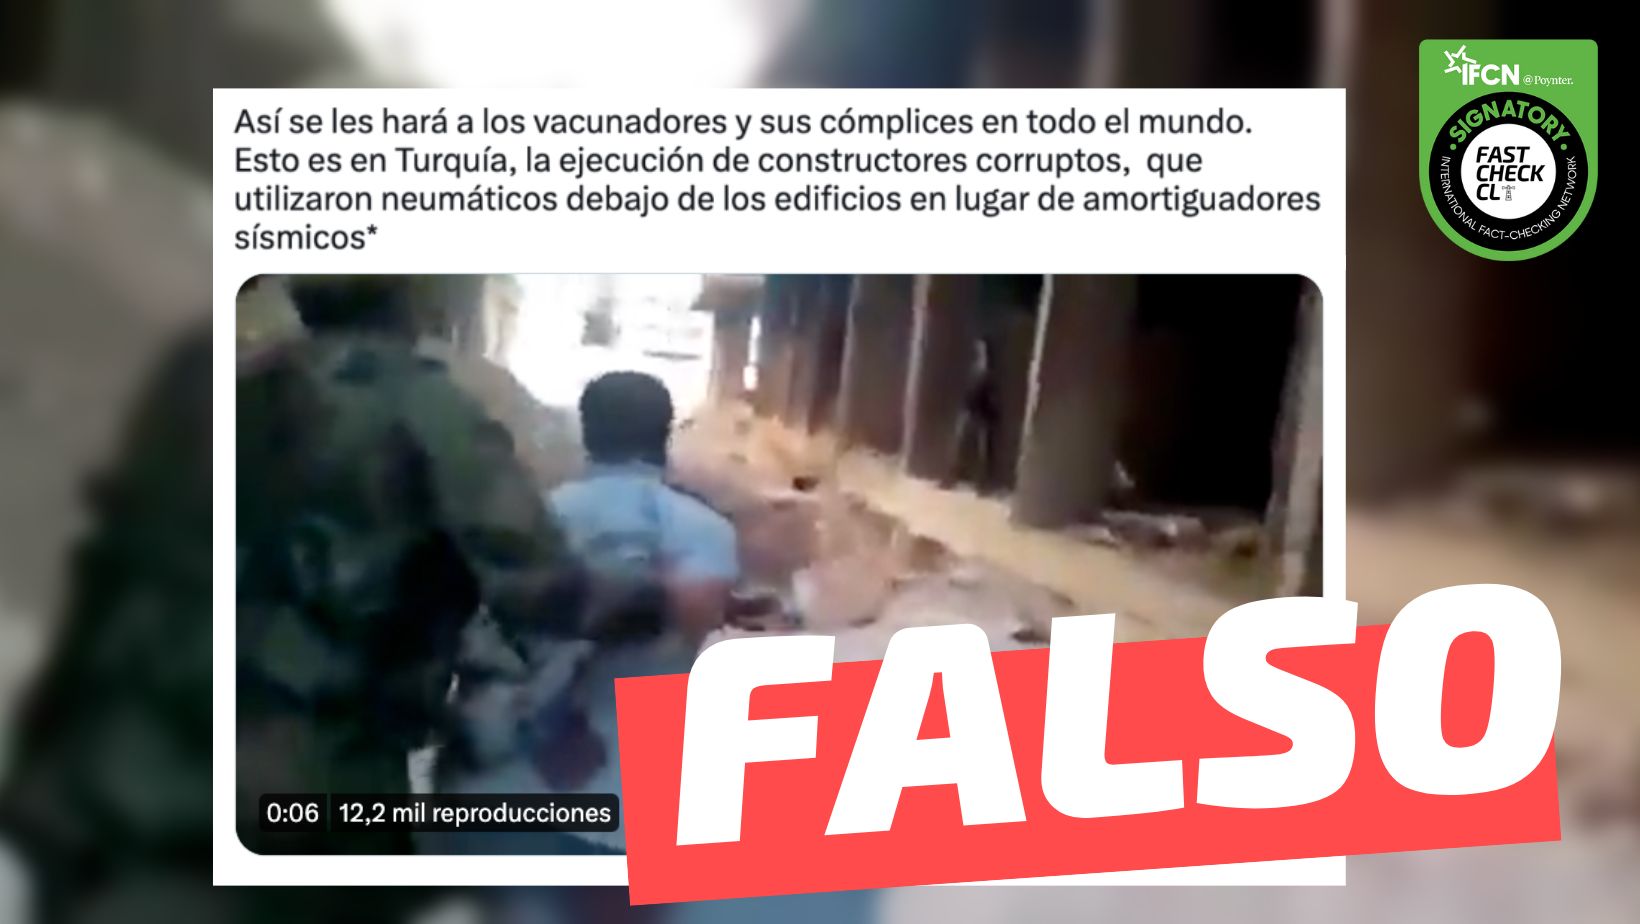 You are currently viewing (Video) “En Turquía, la ejecución de constructores que utilizaron neumáticos debajo de los edificios en lugar de amortiguadores sísmicos”: #Falso